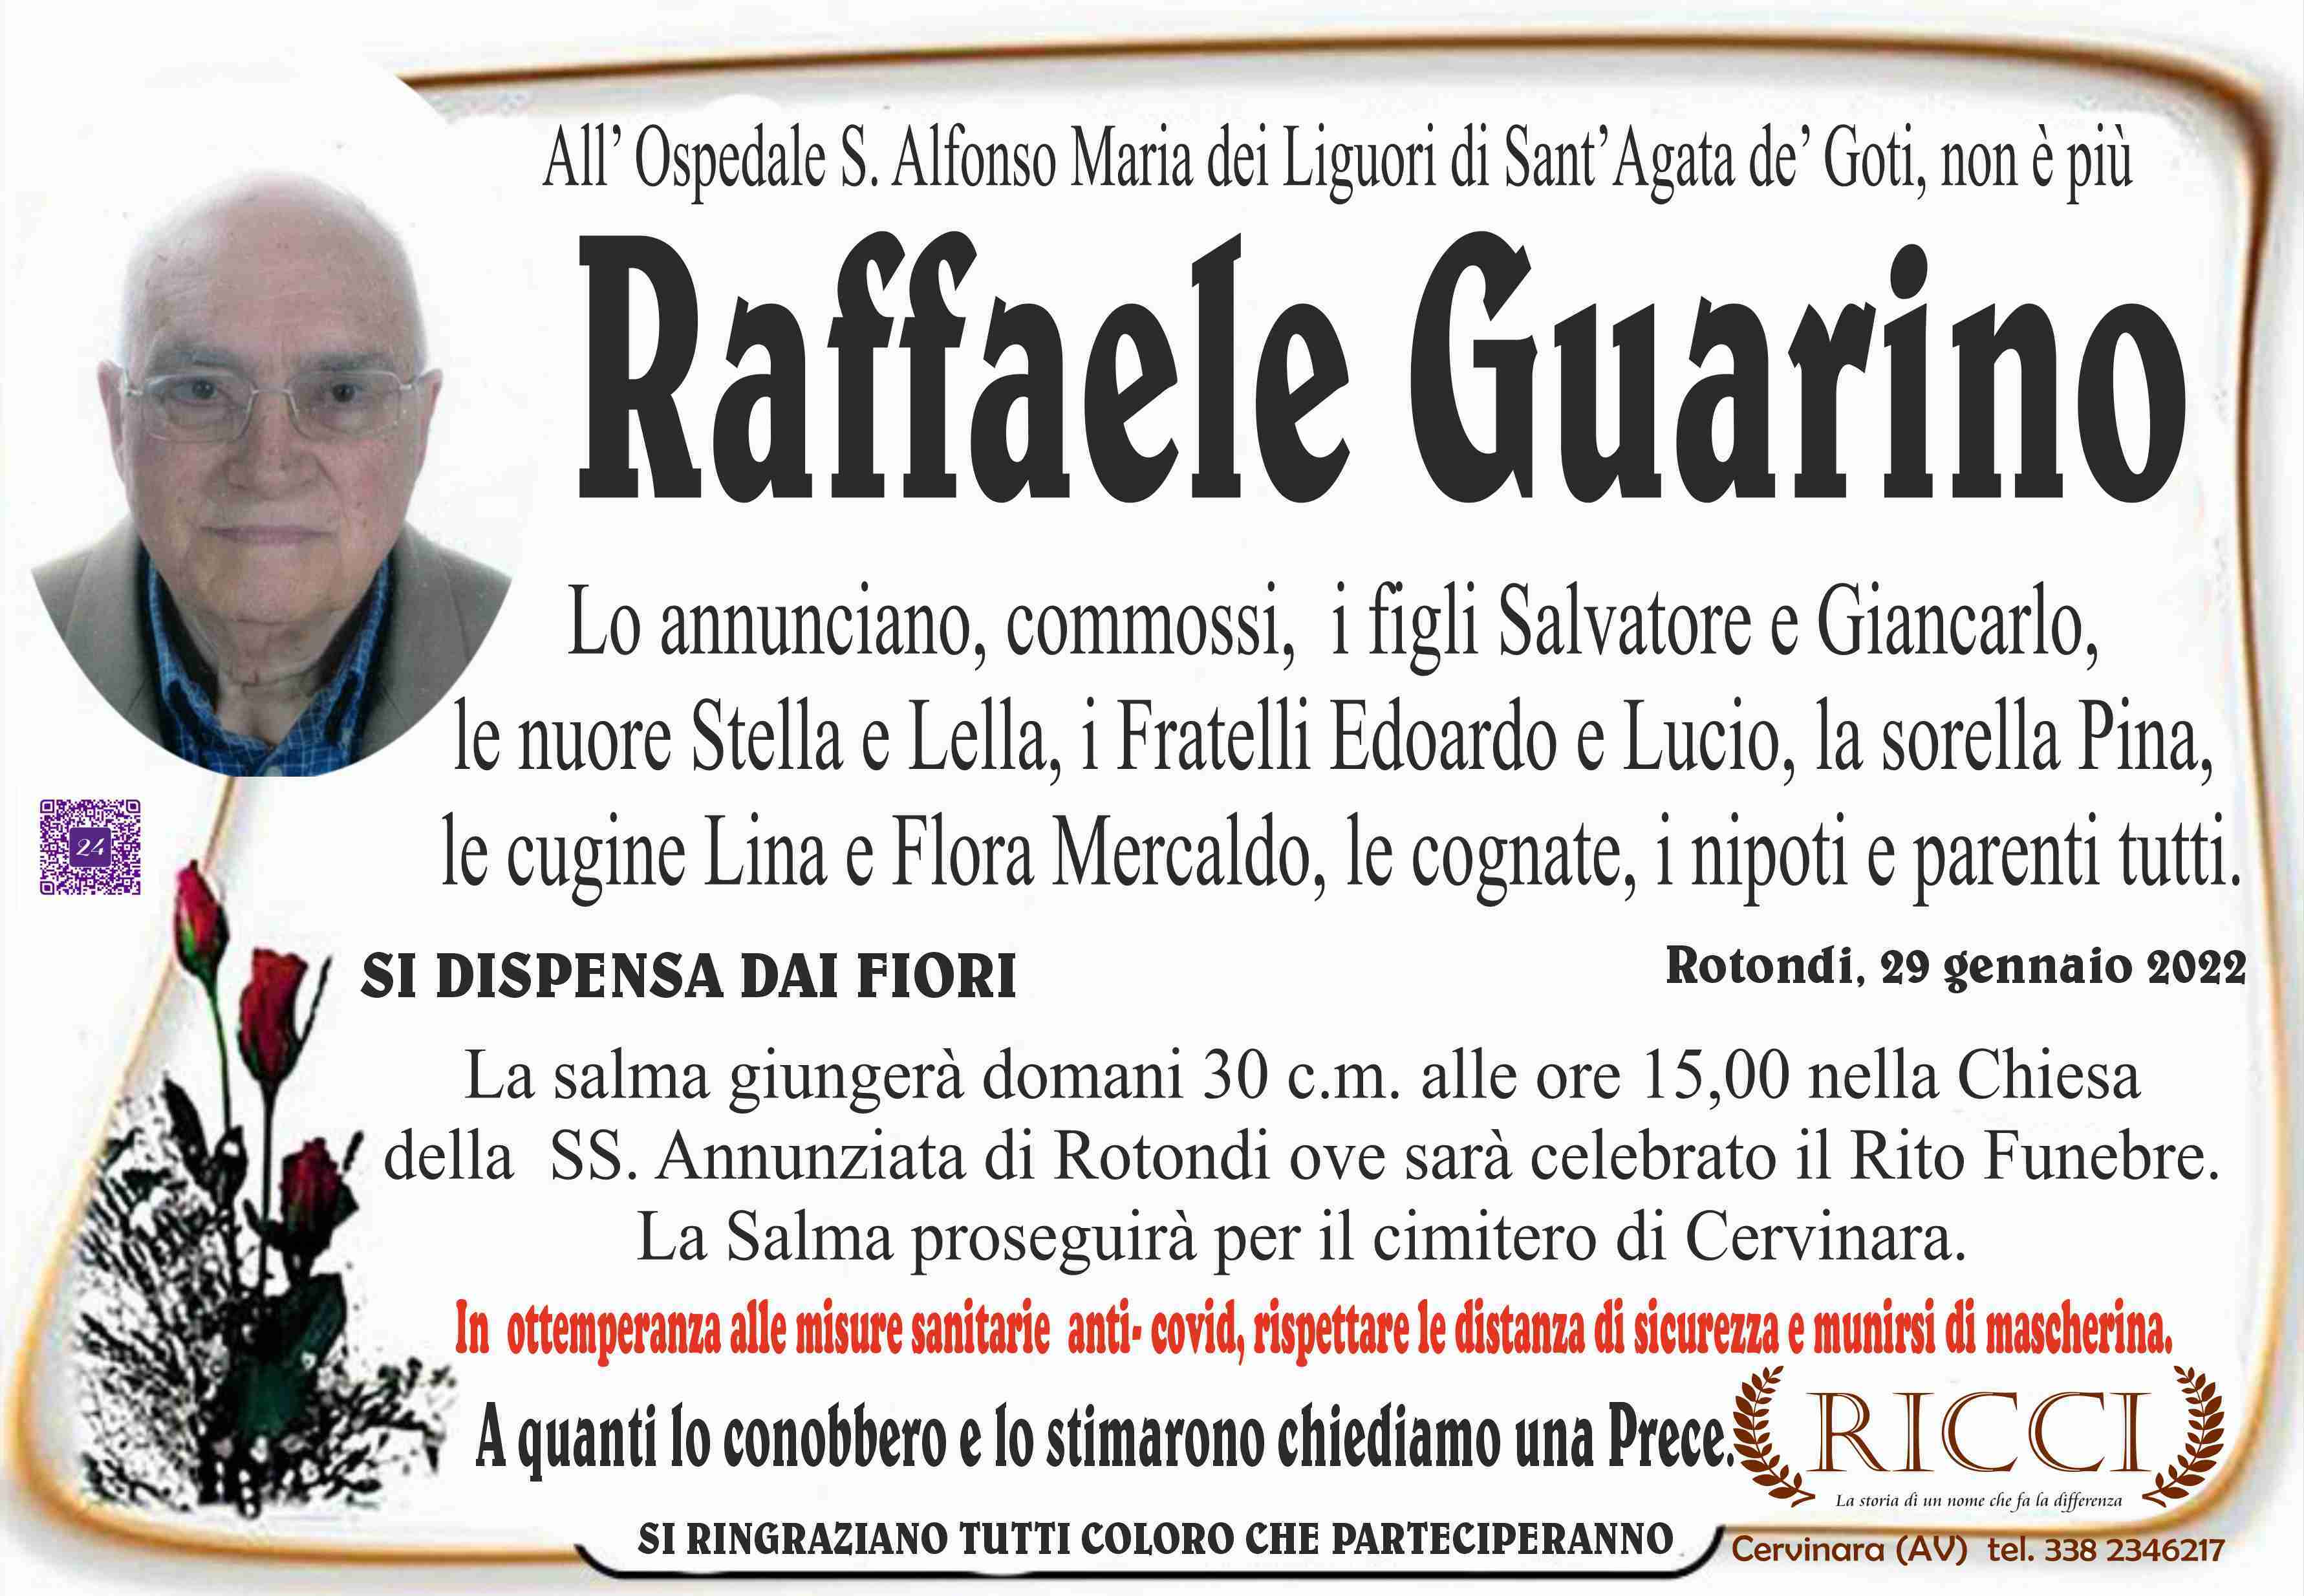 Raffaele Guarino